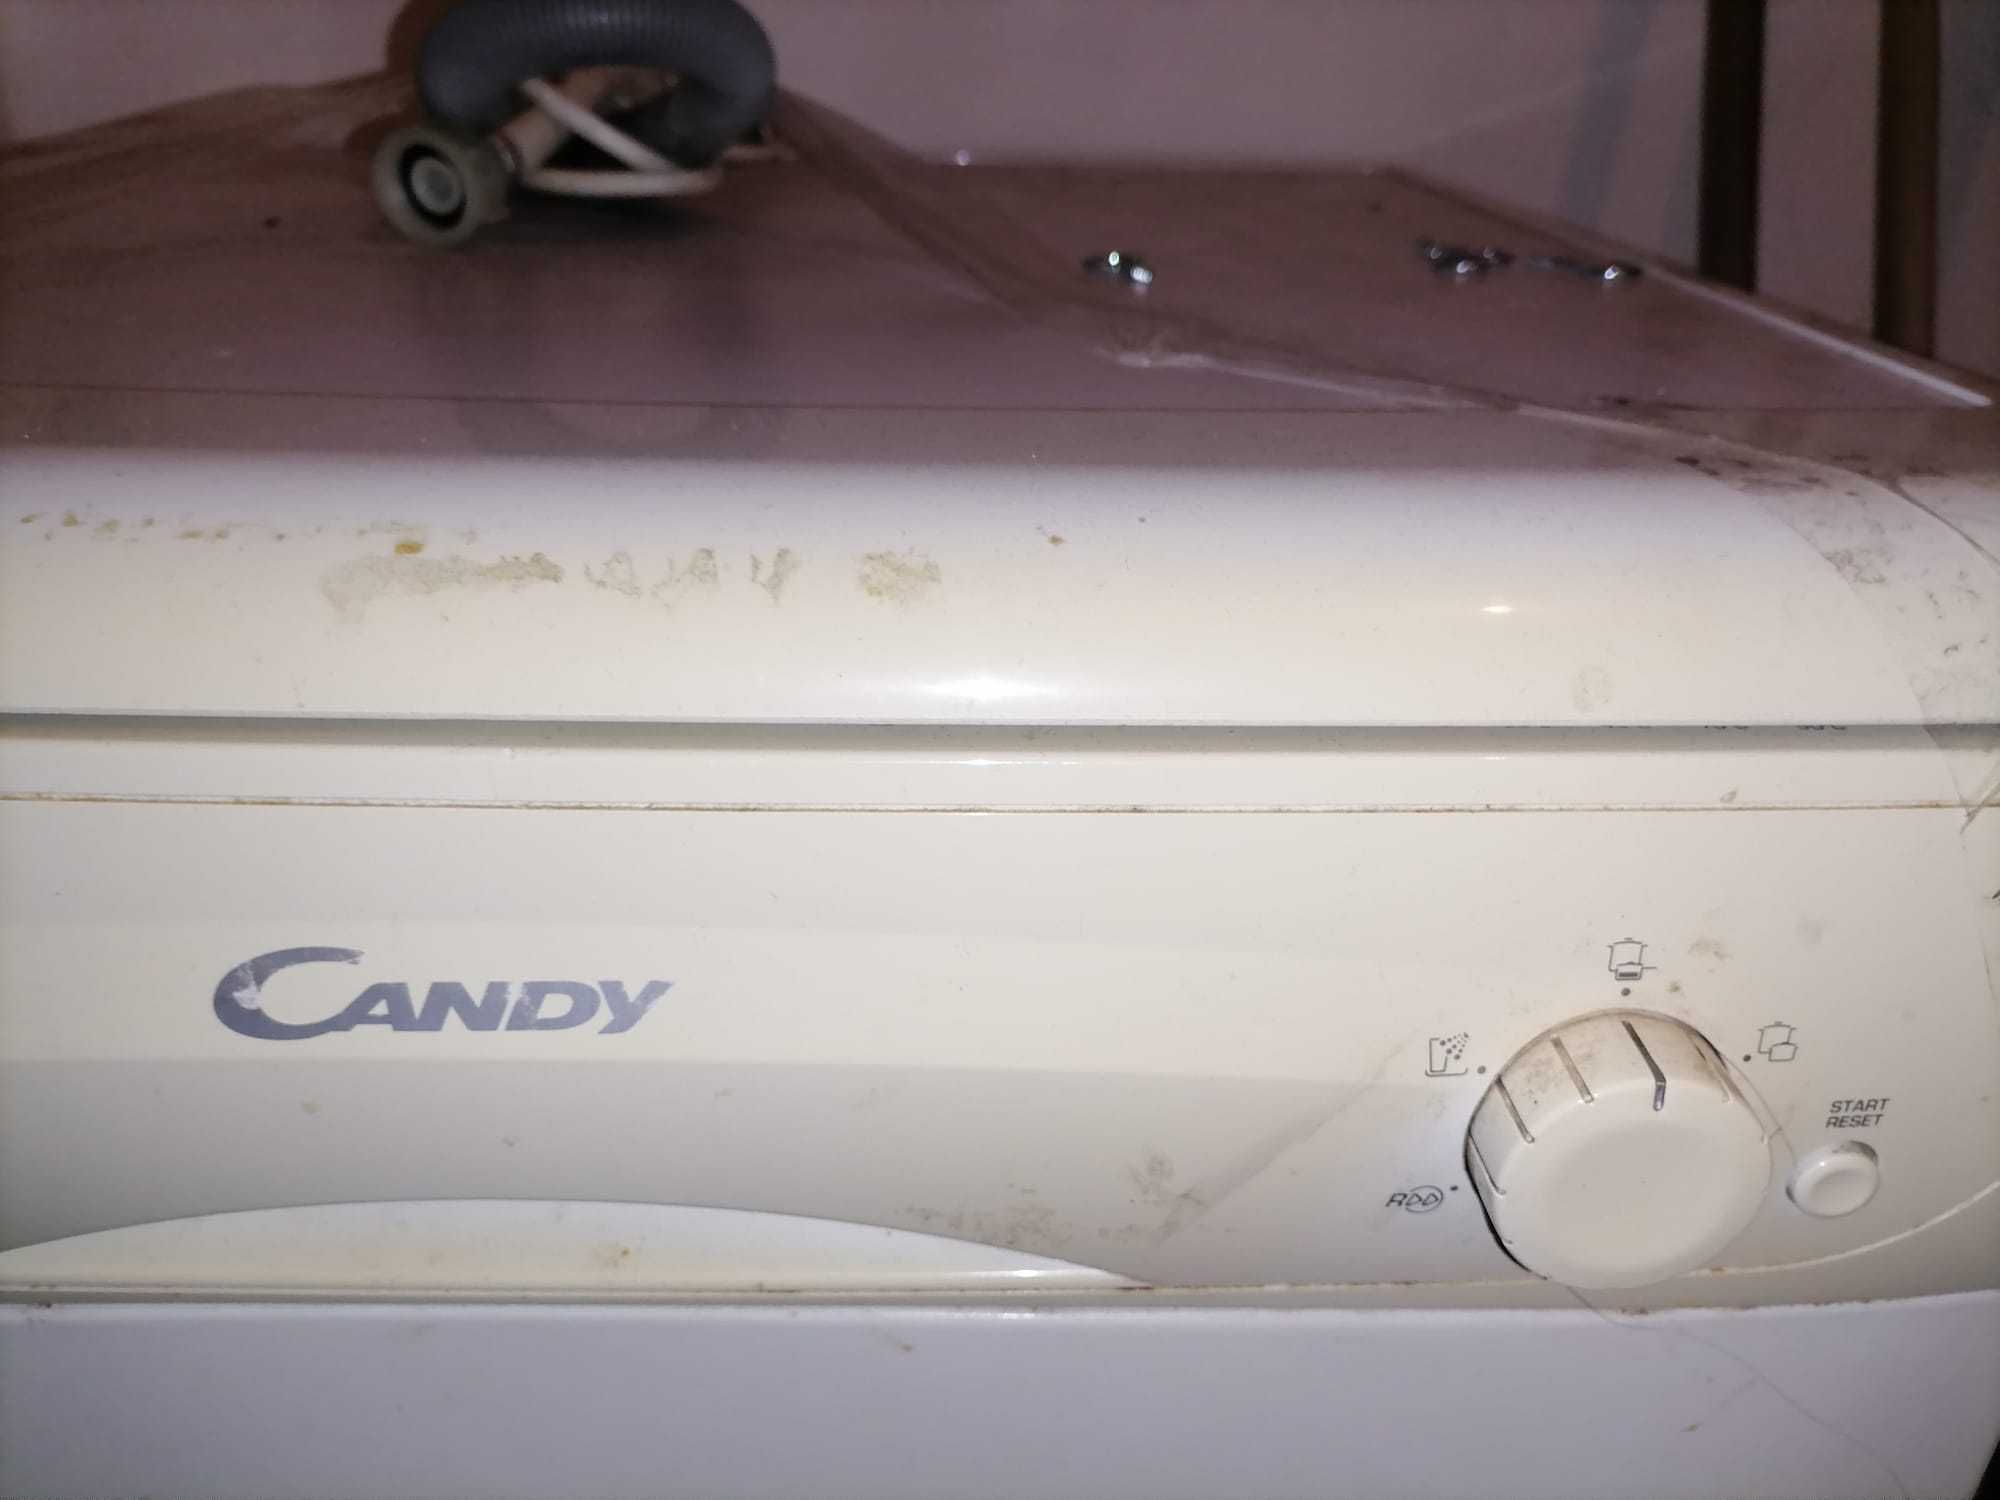 maquina de lavar louça Candy para peças